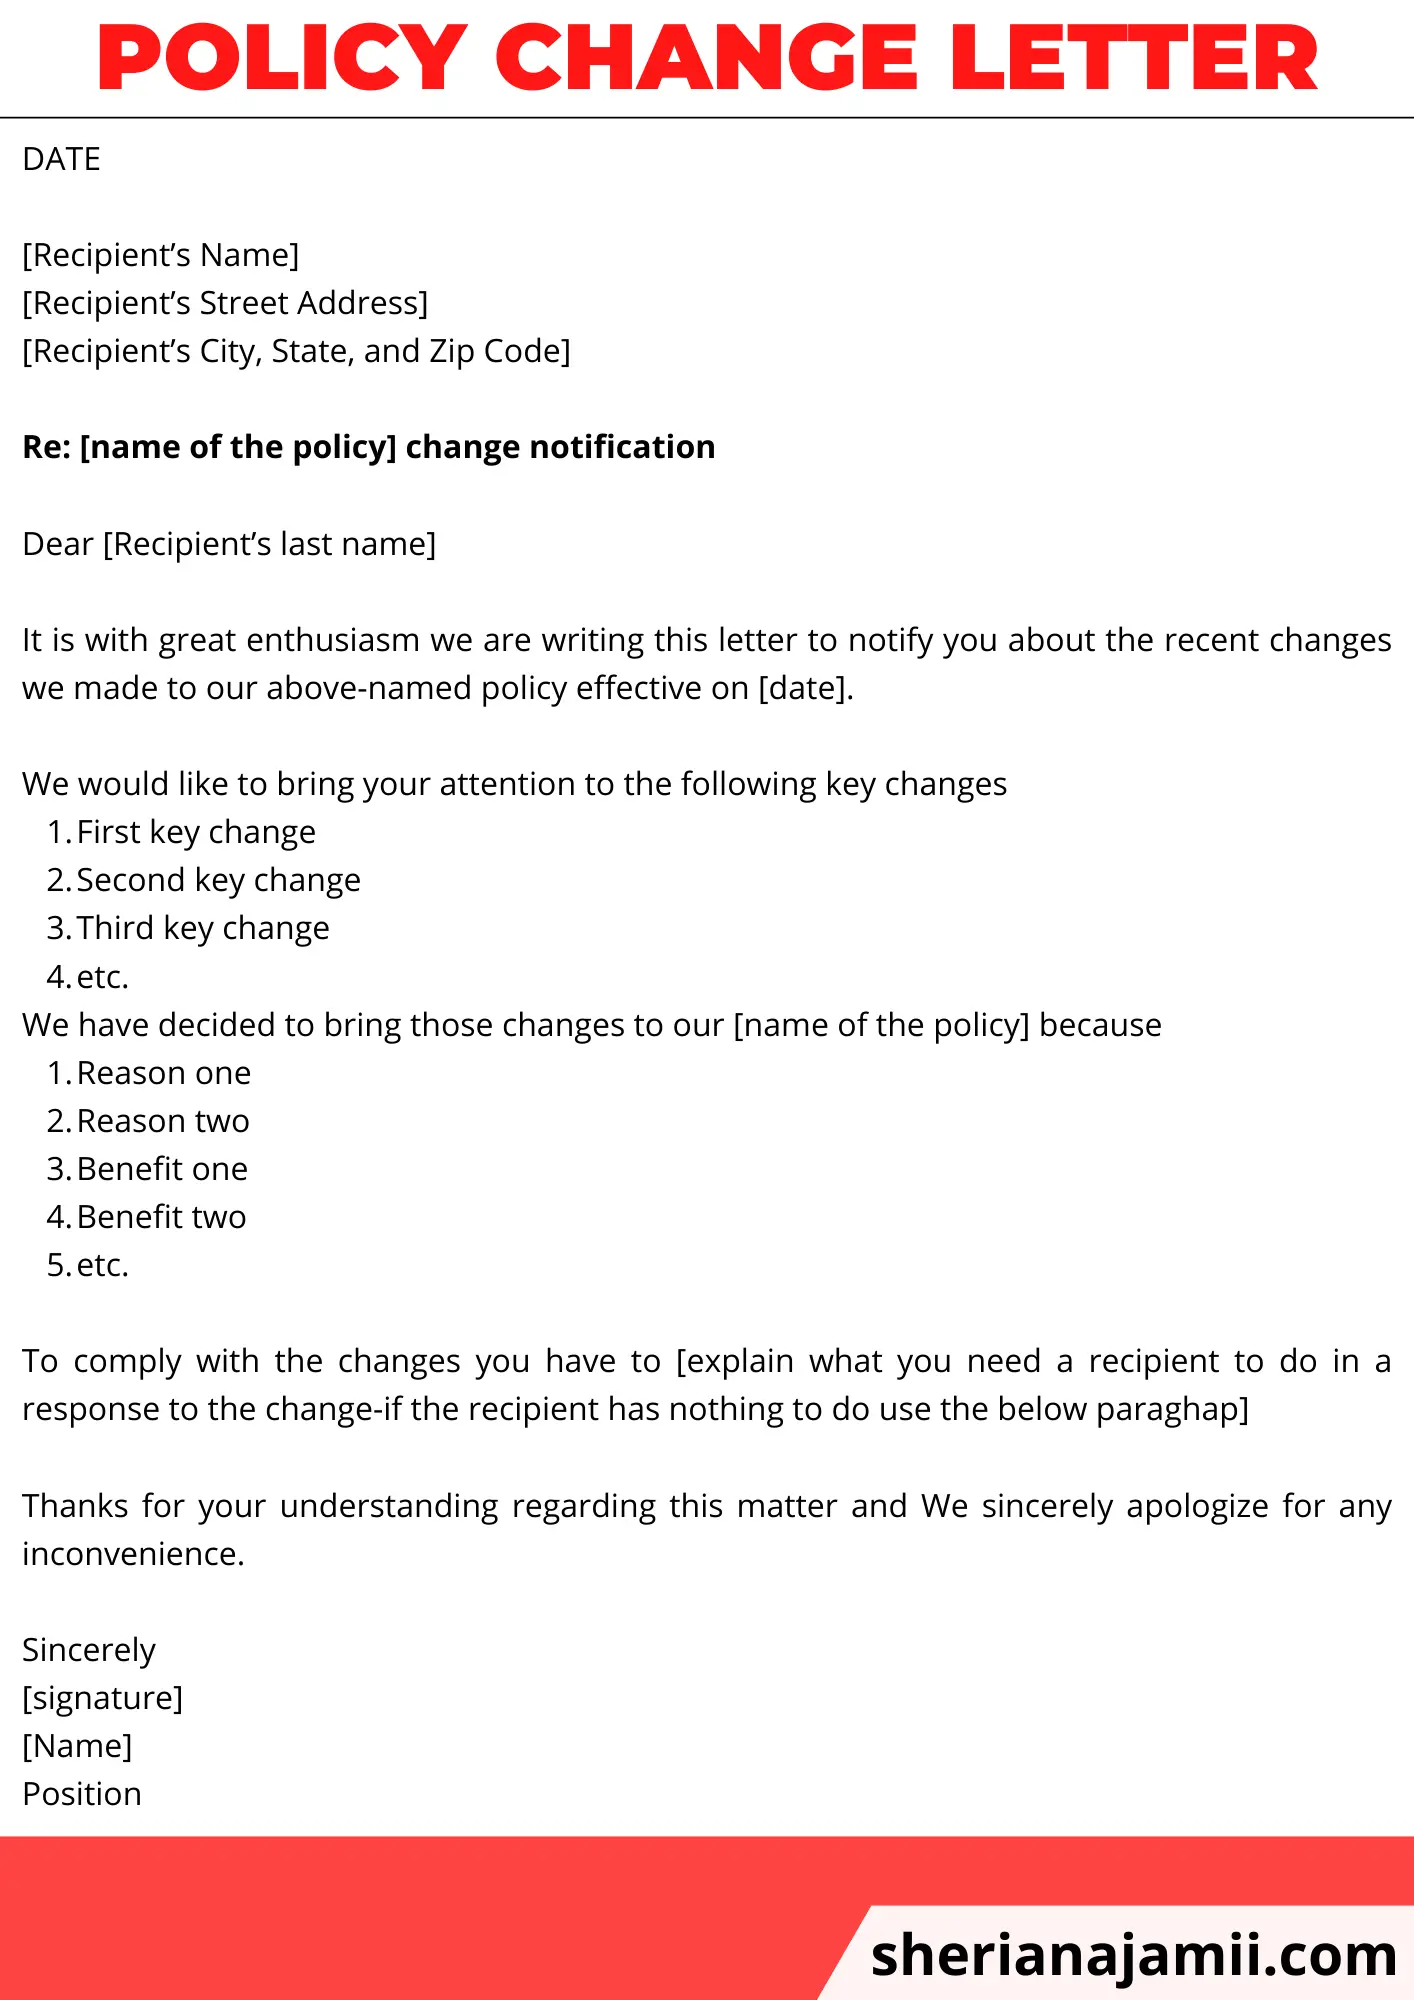 Policy change letter, Policy change letter example